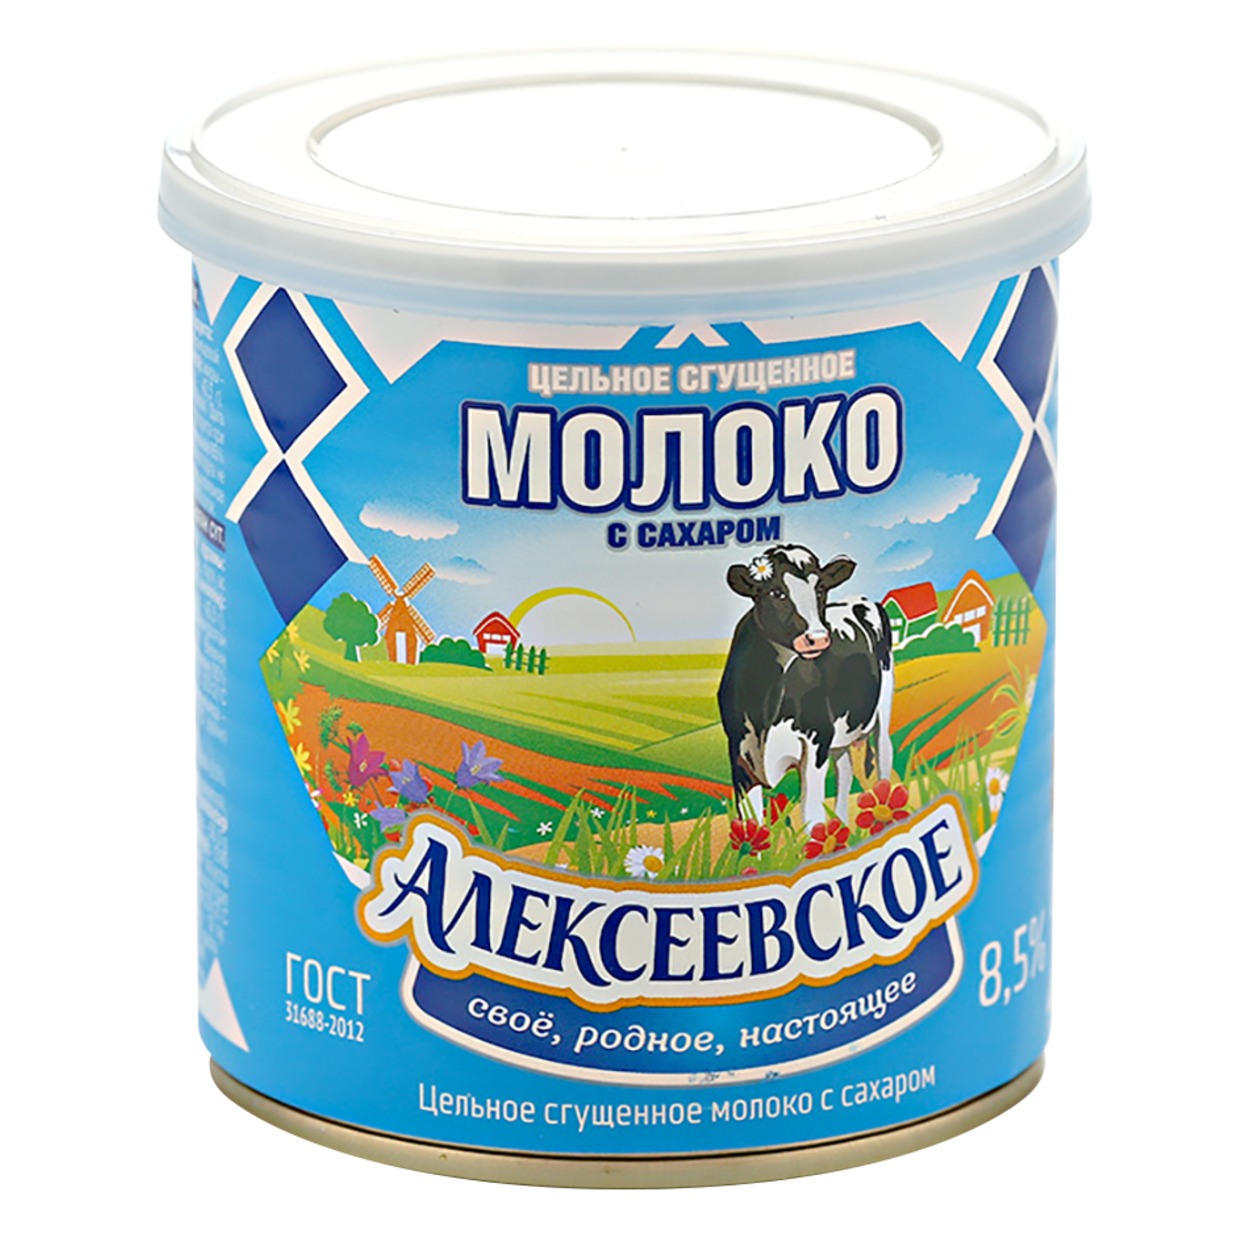 АЛЕКСЕЕВ.Молоко цел.сг.сах.8,5% ж/б 360г